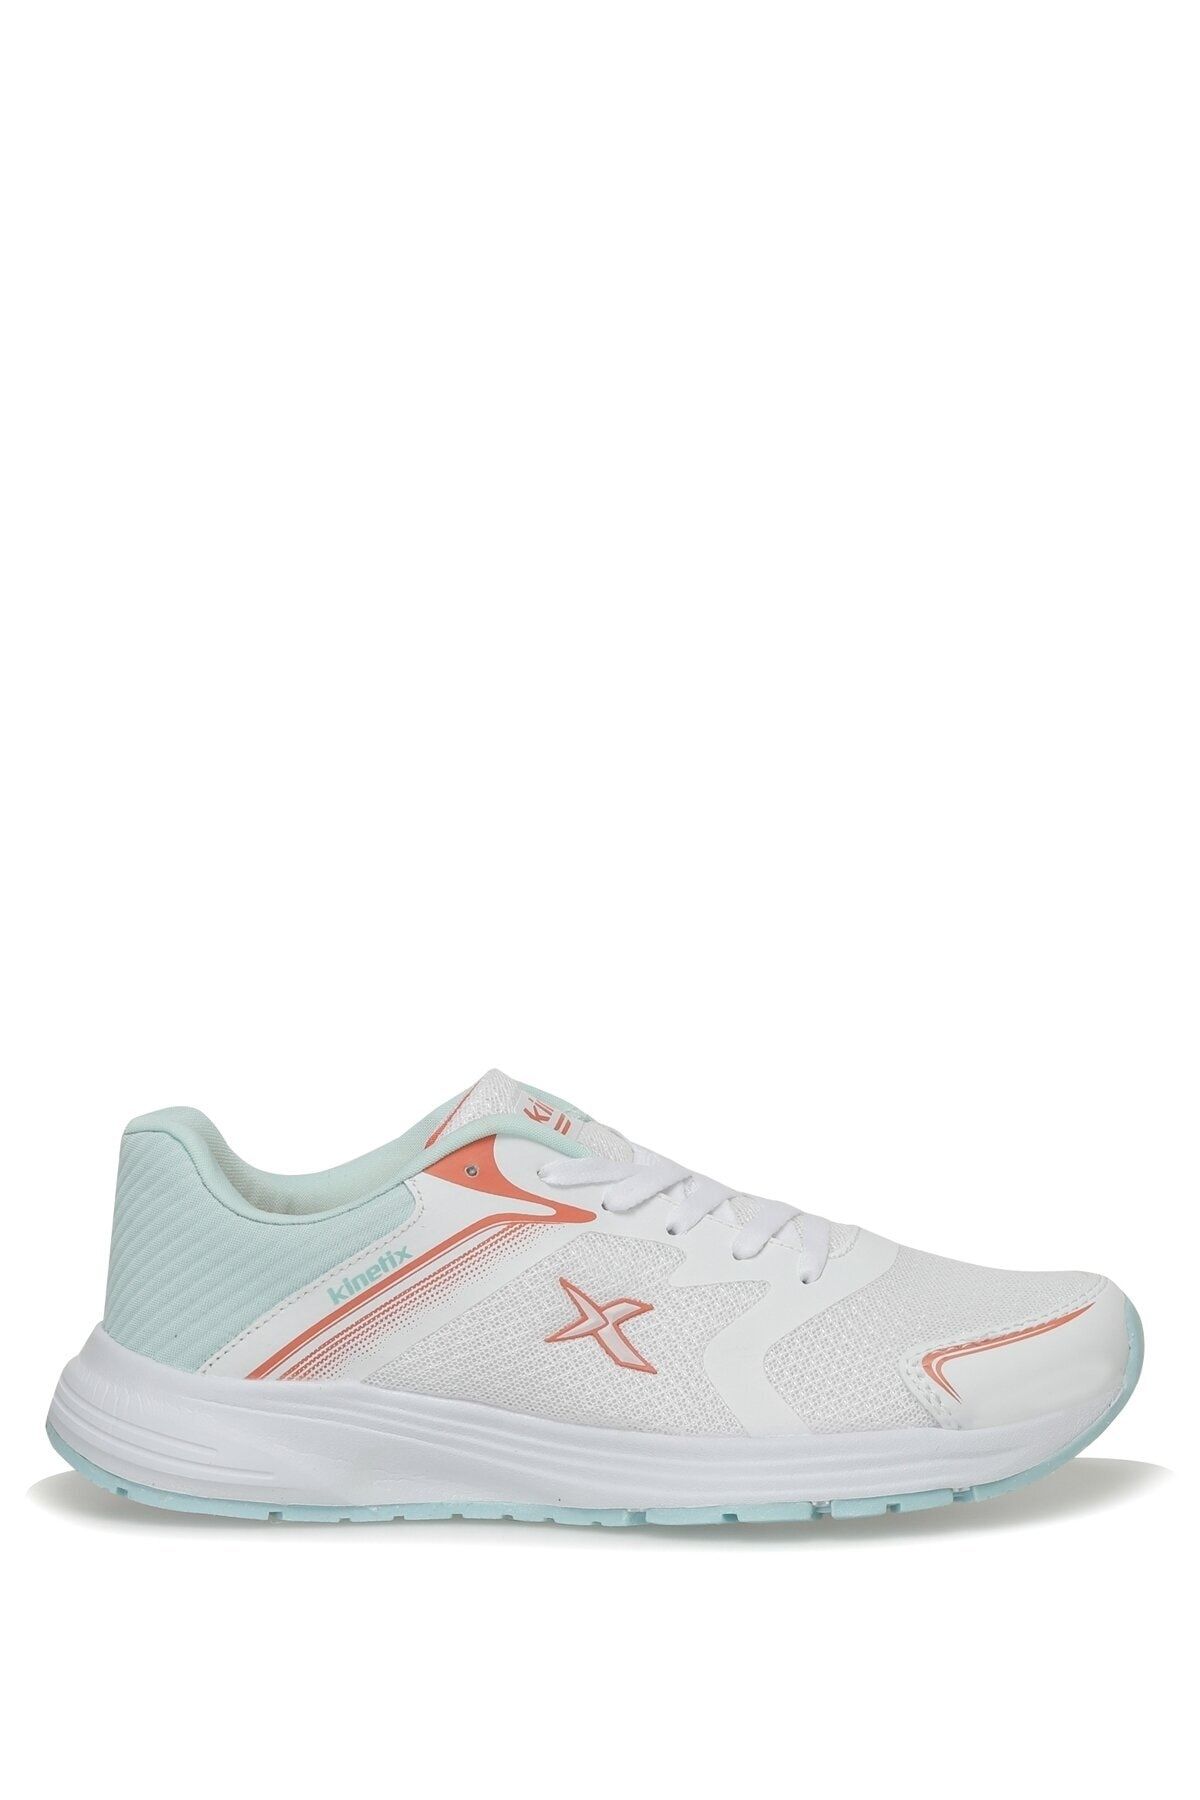 Kinetix Tıeron Tx W 3fx Beyaz Kadın Koşu Ayakkabısı